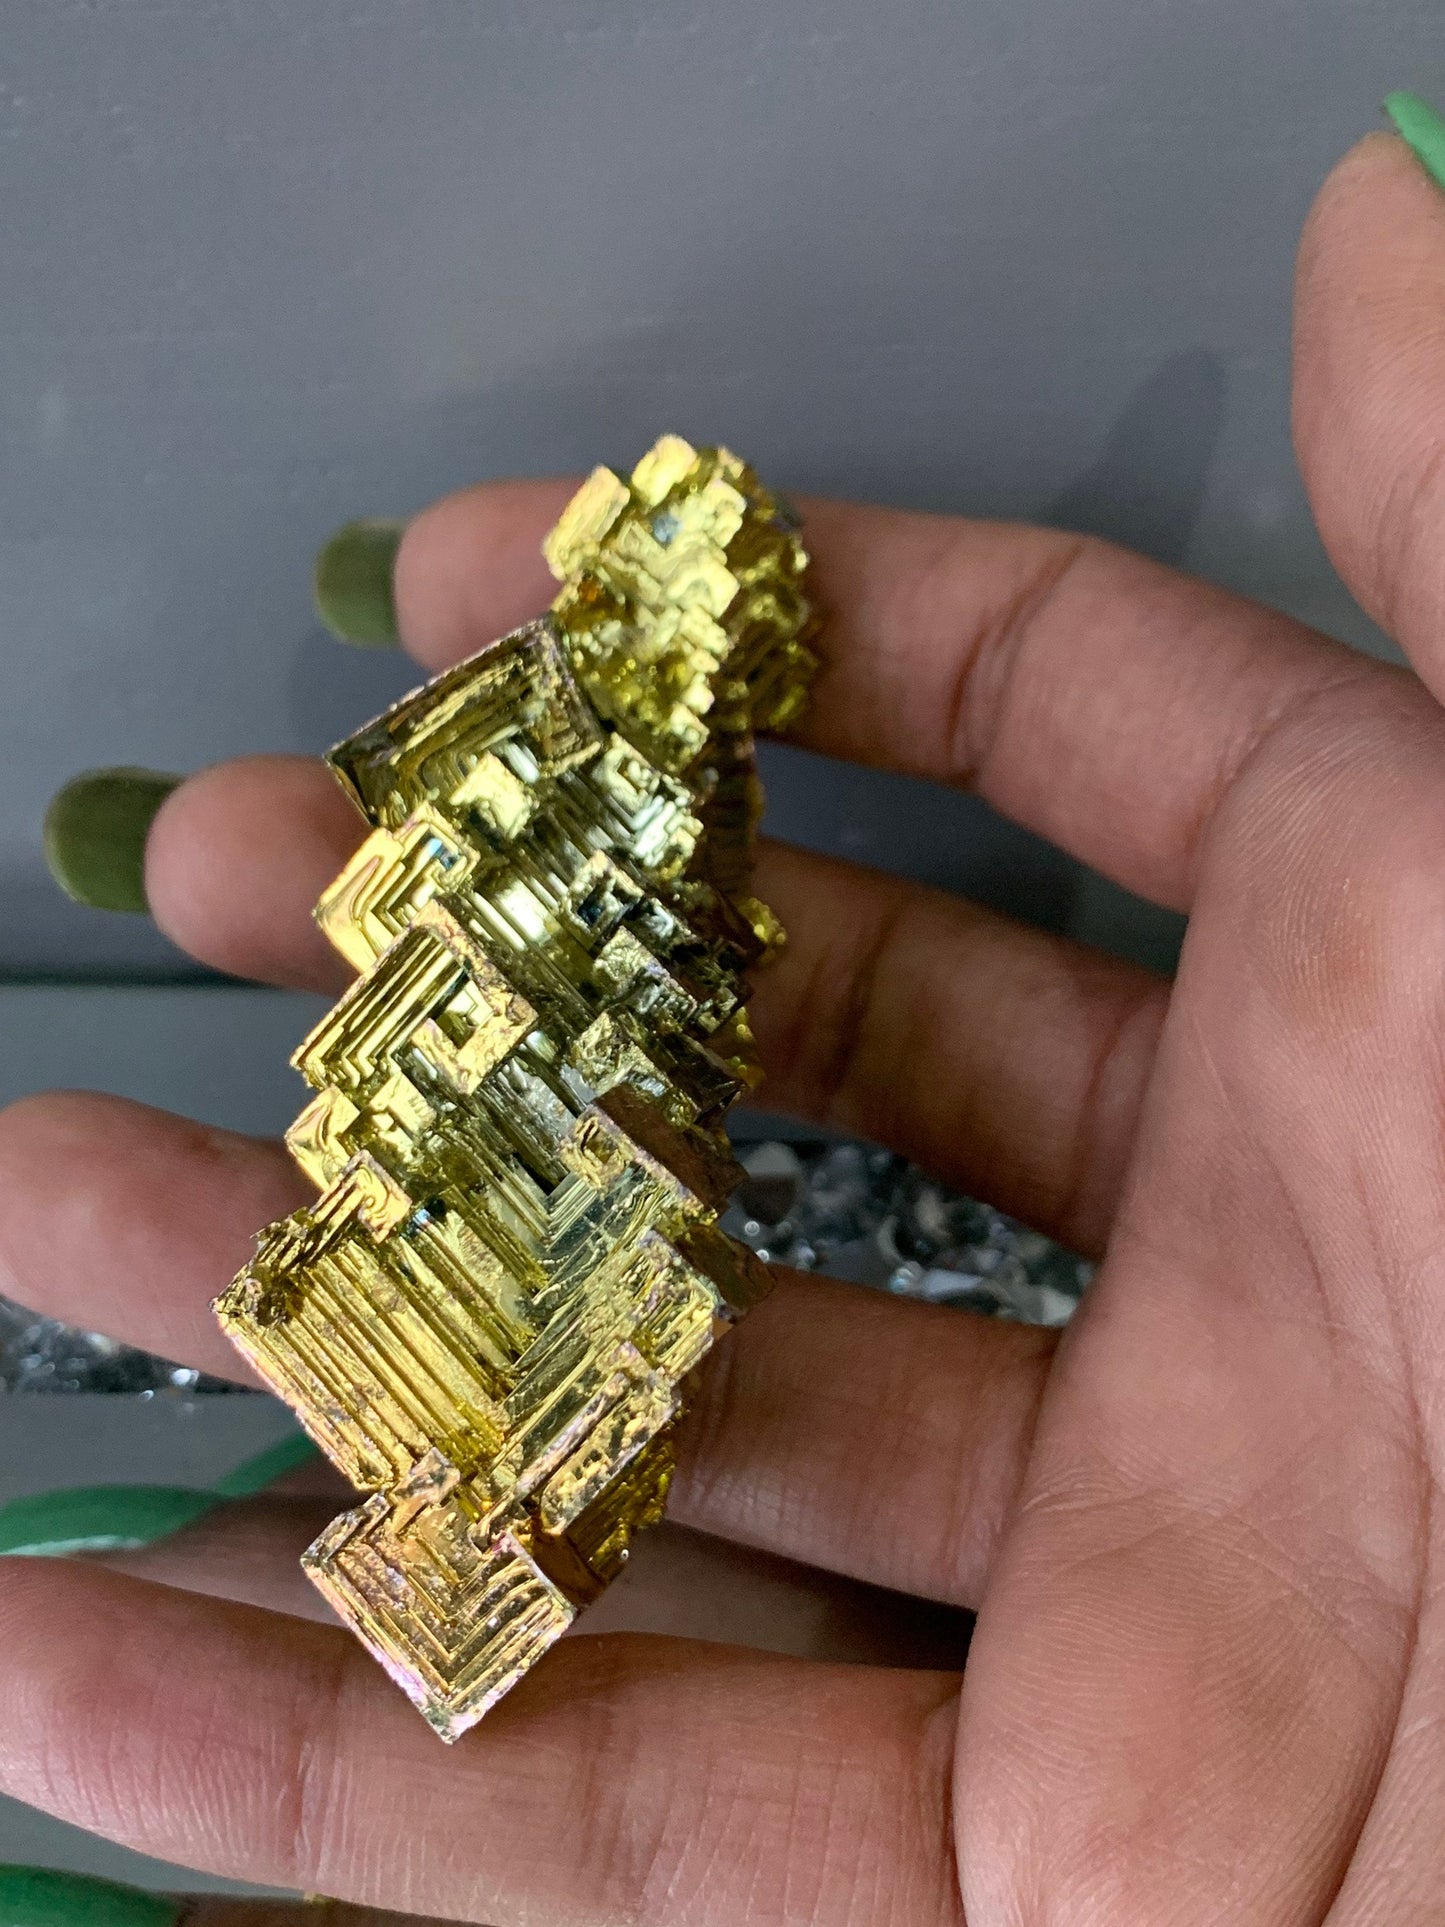 Gold Bismuth Crystal Specimen Metal Art XL